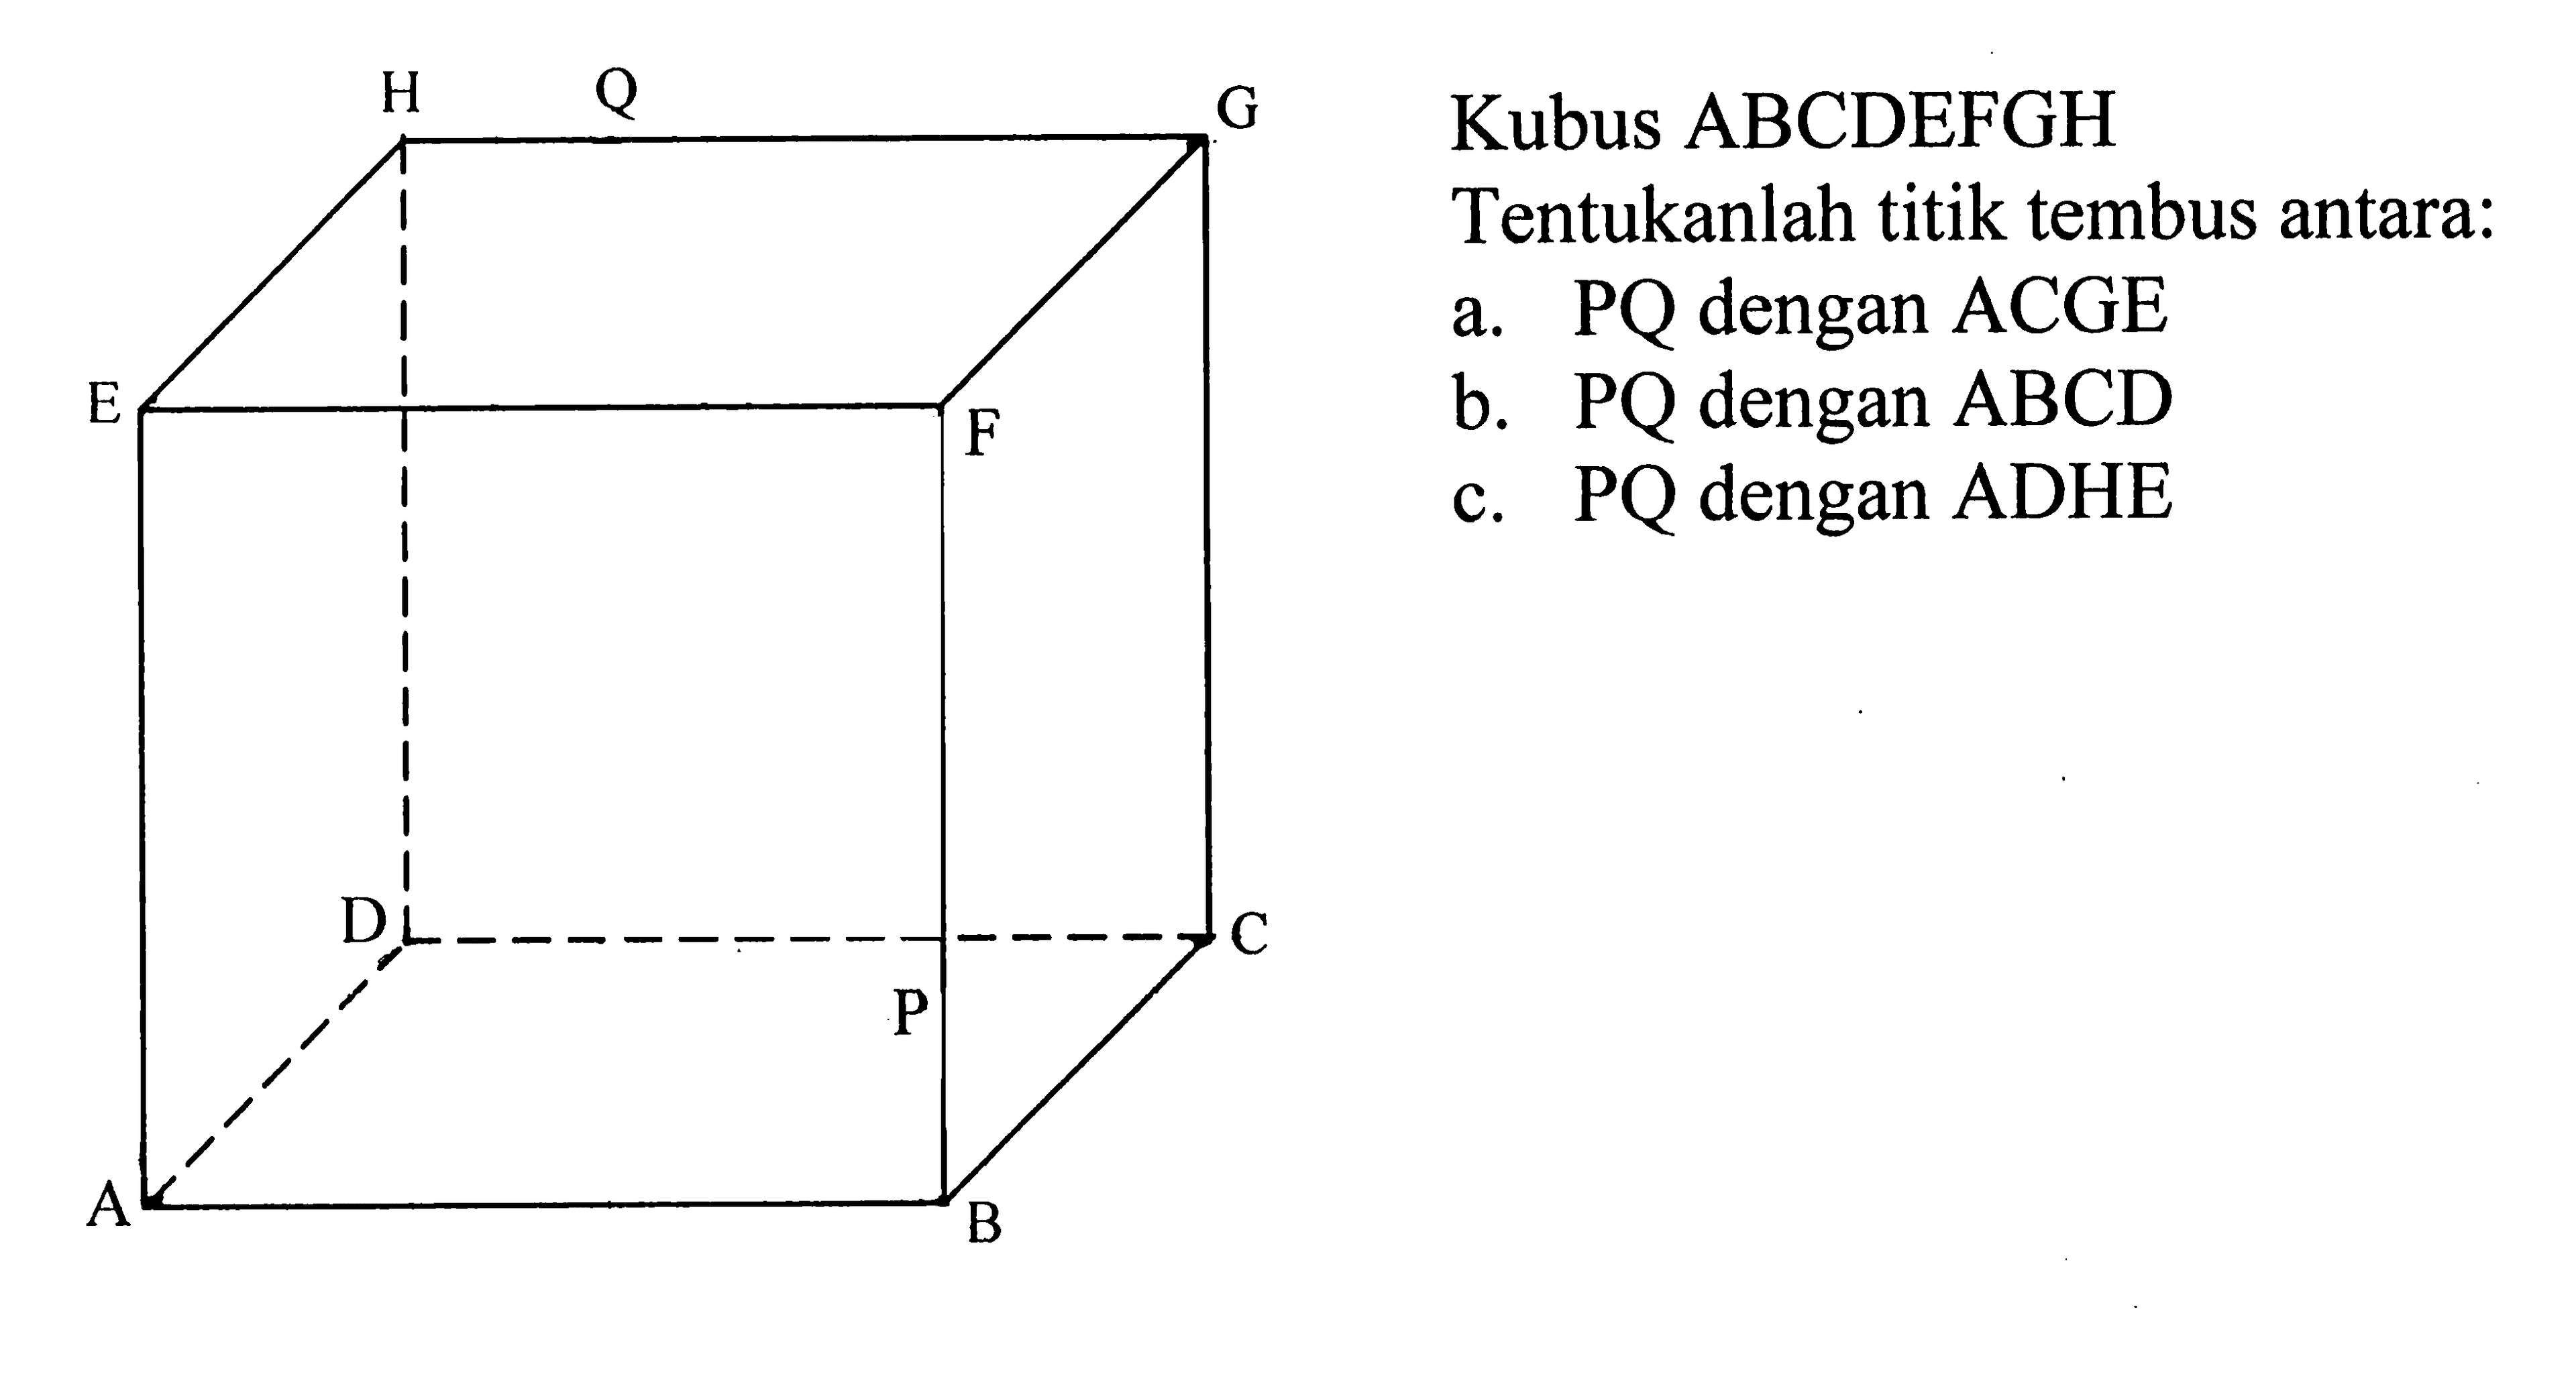 A B C D E F G H P Q Kubus ABCDEFGH Tentukanlah titik tembus antara: a. PQ dengan ACGE b. PQ dengan ABCD E c. PQ dengan ADHE